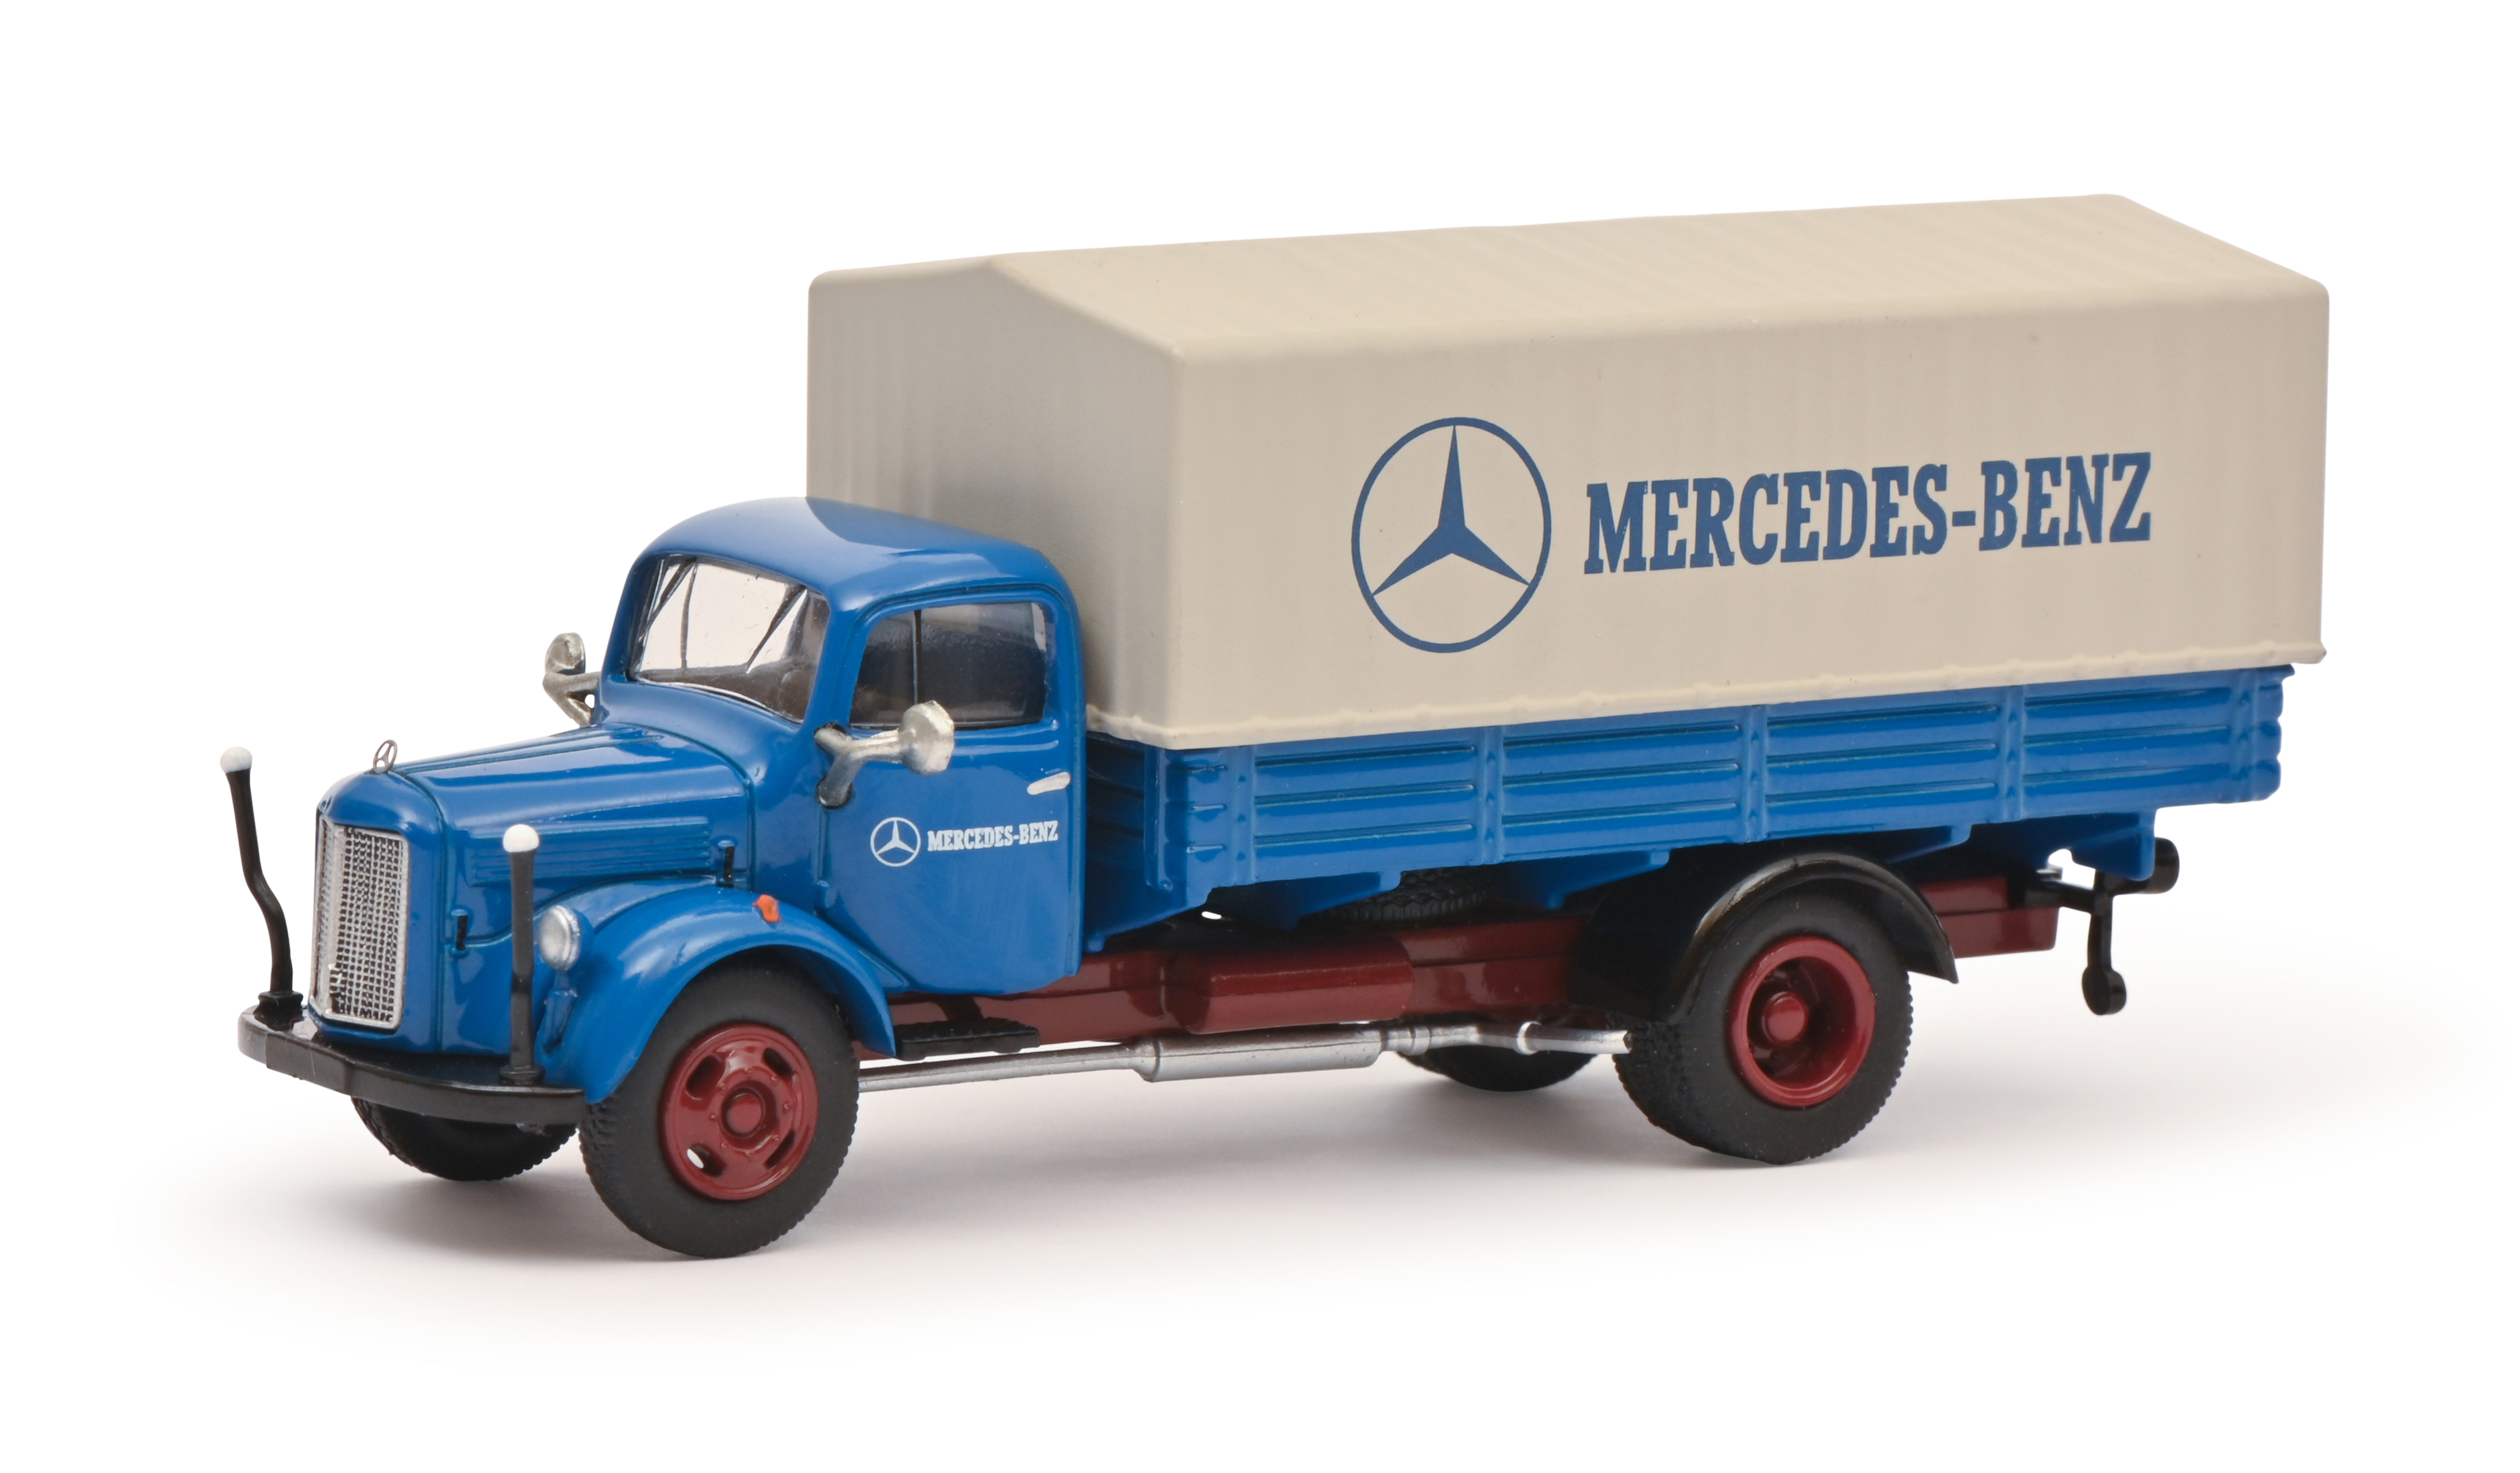 Die Mercedes-Benz Collection mit Accessoires, Mode oder Modellautos